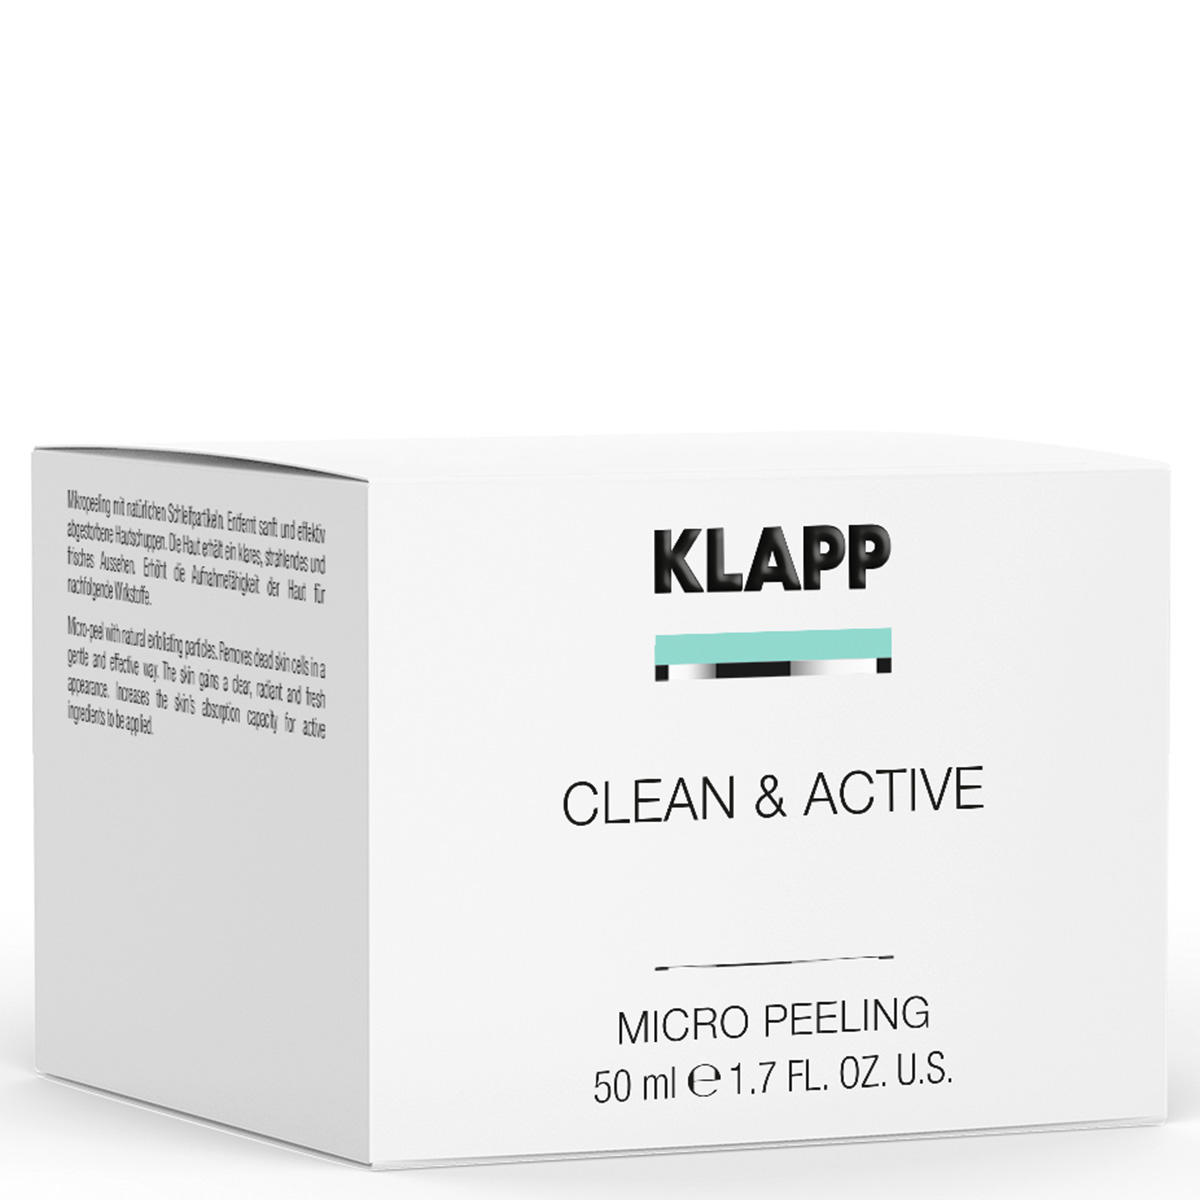 KLAPP CLEAN & ACTIVE Micro Peeling 50 ml - 2